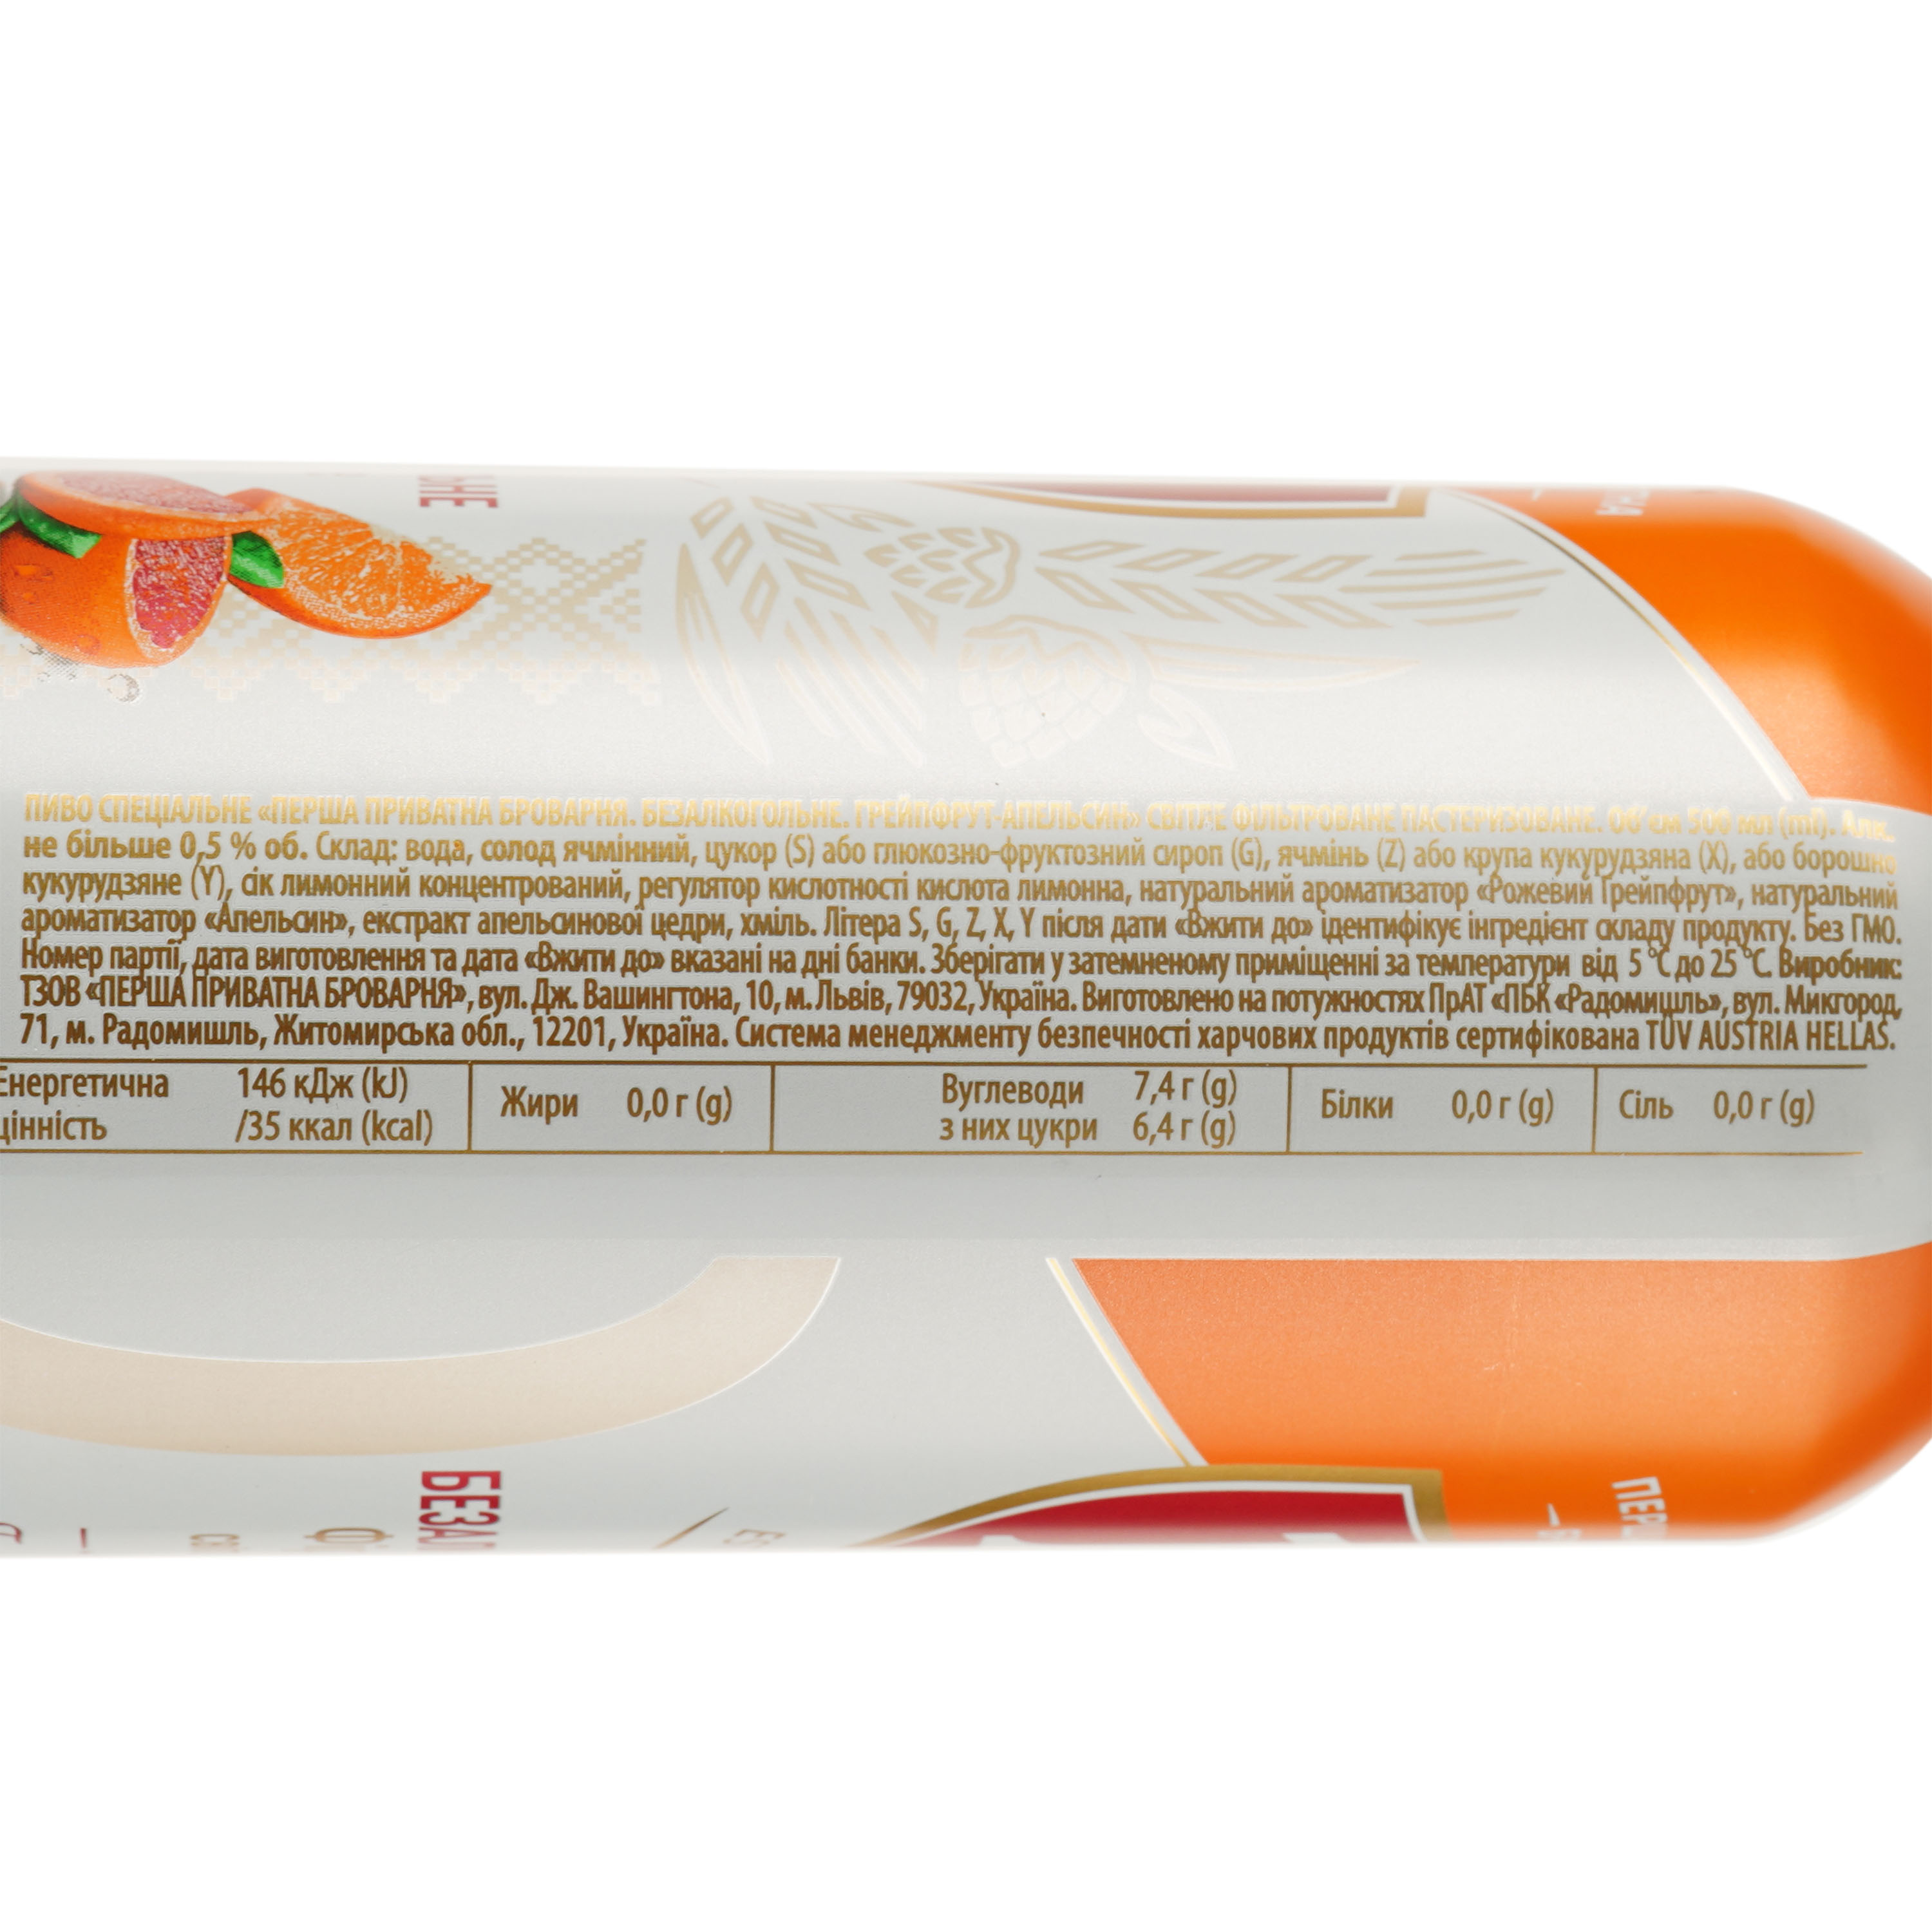 Пиво безалкогольное Перша приватна броварня Грейпфрут-апельсин, светлое, фильтрованное, 0,5%, ж/б, 0,5 л (908813) - фото 3